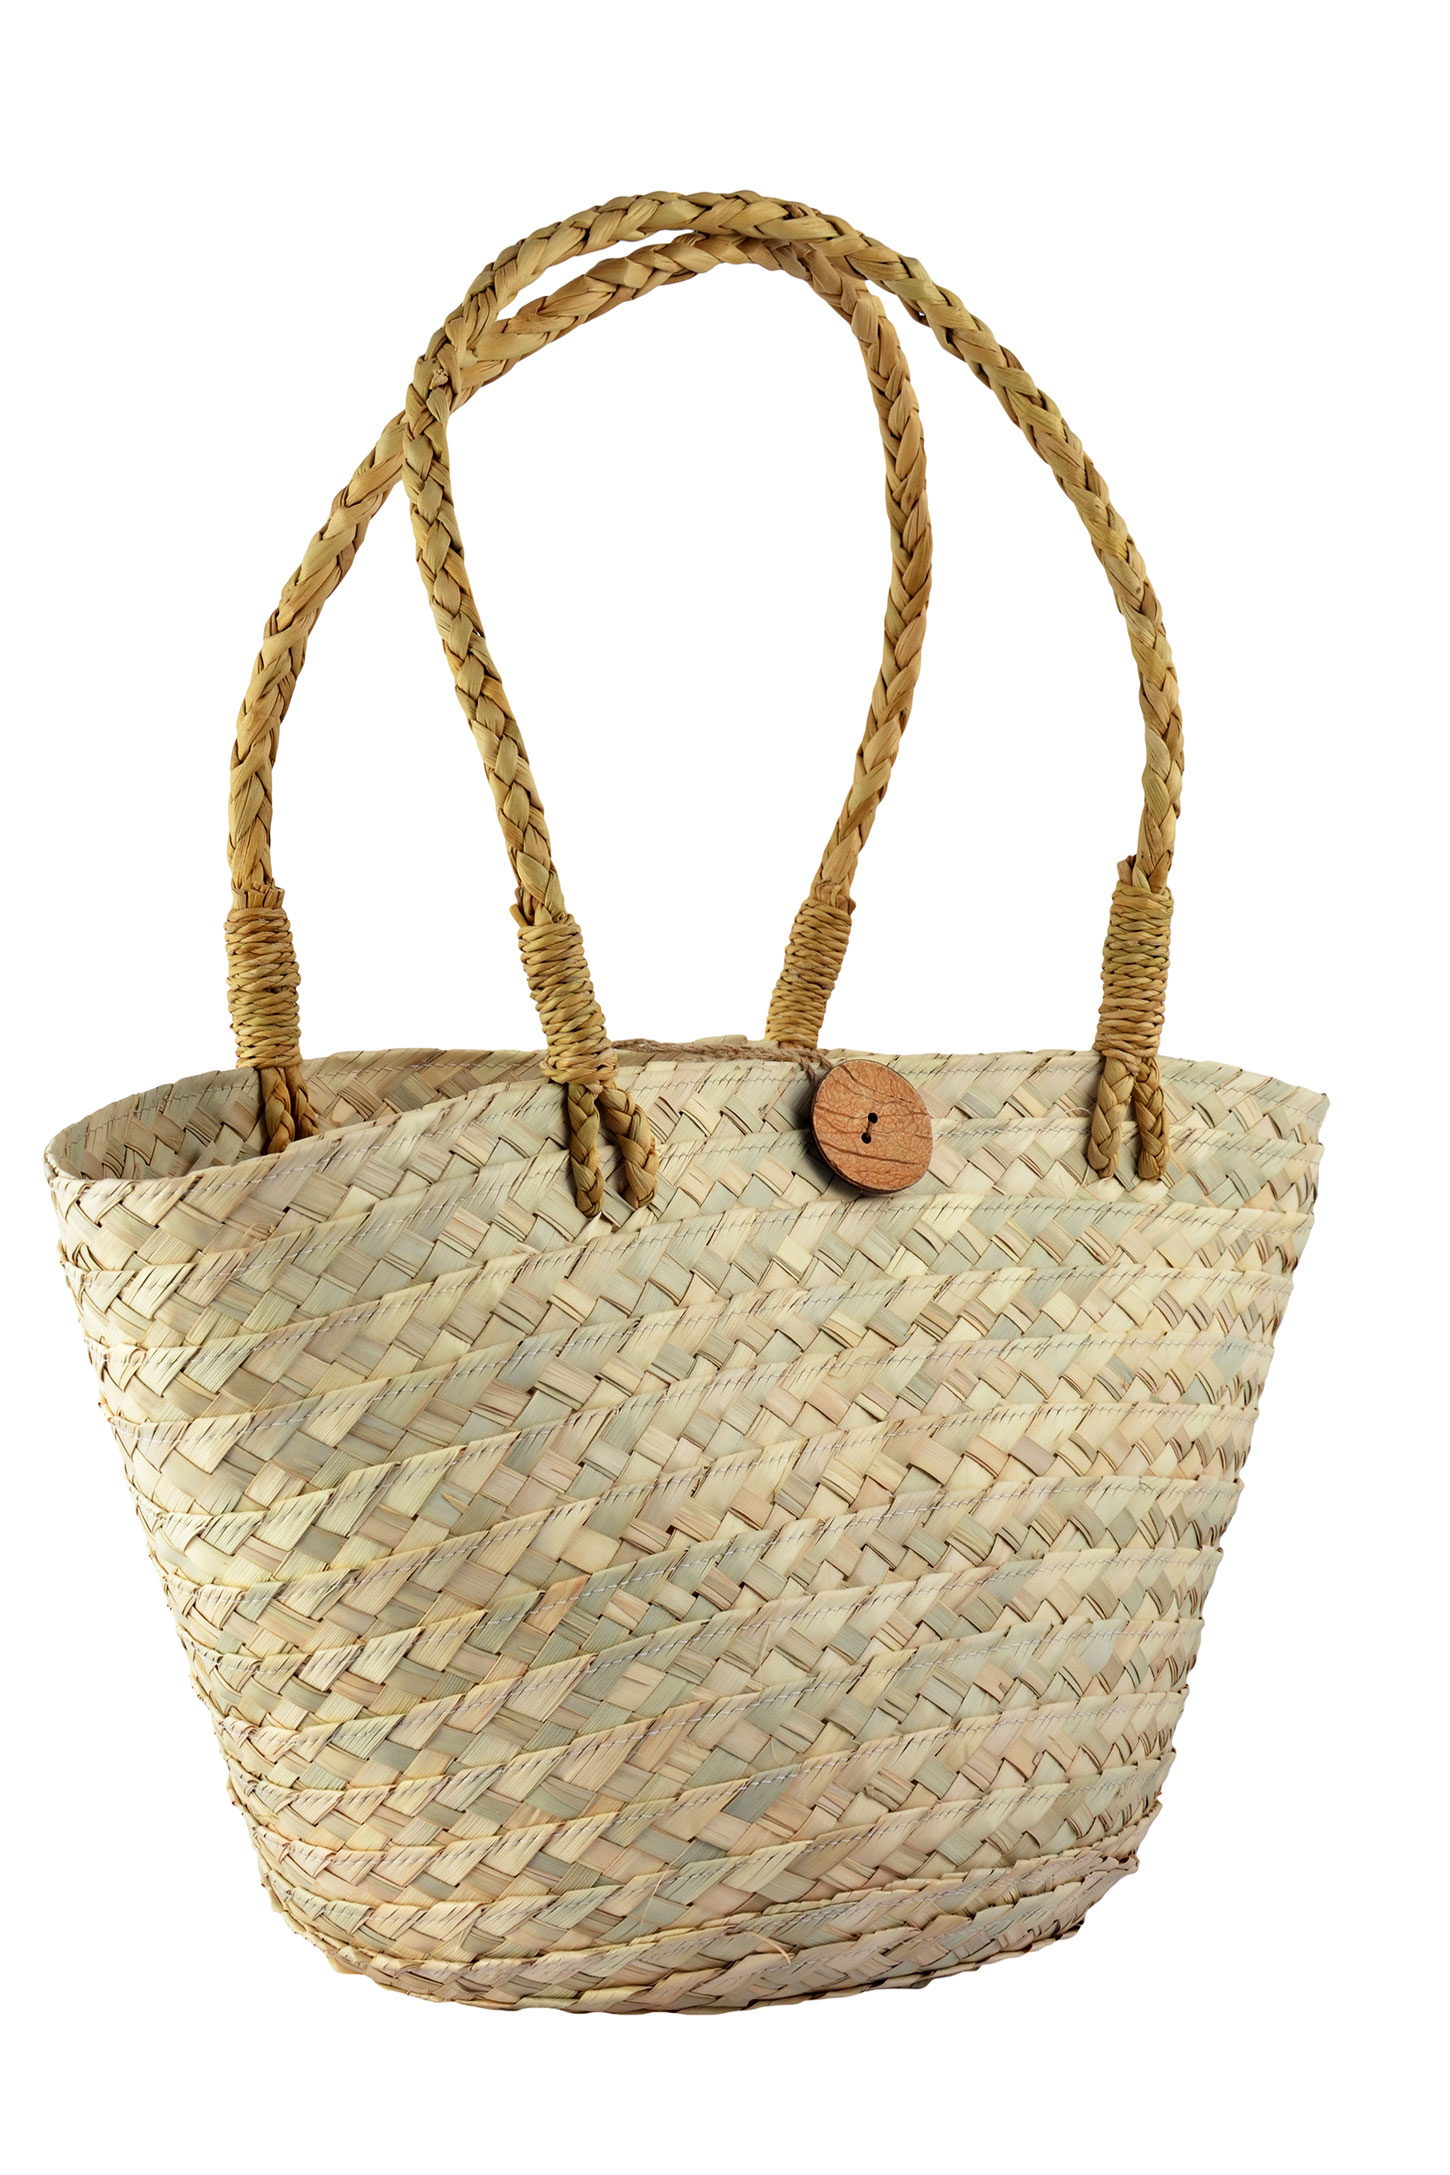 Hand Woven Kauna Grass Bag - Natural Color - Bags and Belts Women  Accessories | World Art Community